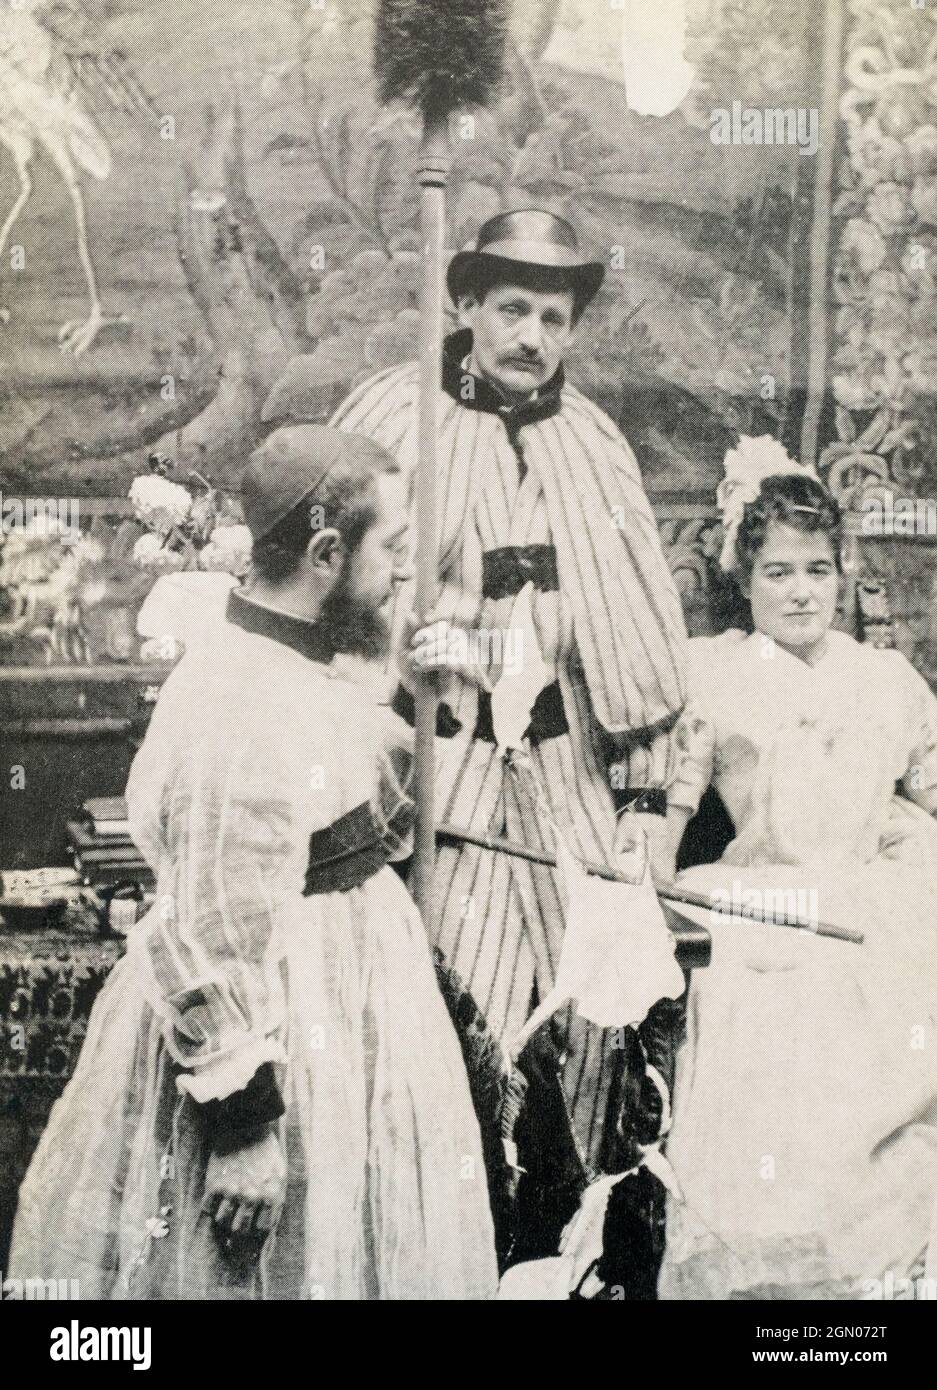 Toulouse-Lautrec, links, gekleidet als Chorknabe für eine Veranstaltung im Moulin Rouge im Jahr 1894. Nach einer Fotografie des französischen Fotografen Maurice Guibert, 1856 - 1922, ein Freund von Toulouse-Lautrec. Henri Toulouse-Lautrec, 1864 - 1901, französischer Künstler nach dem Impressionismus. Stockfoto